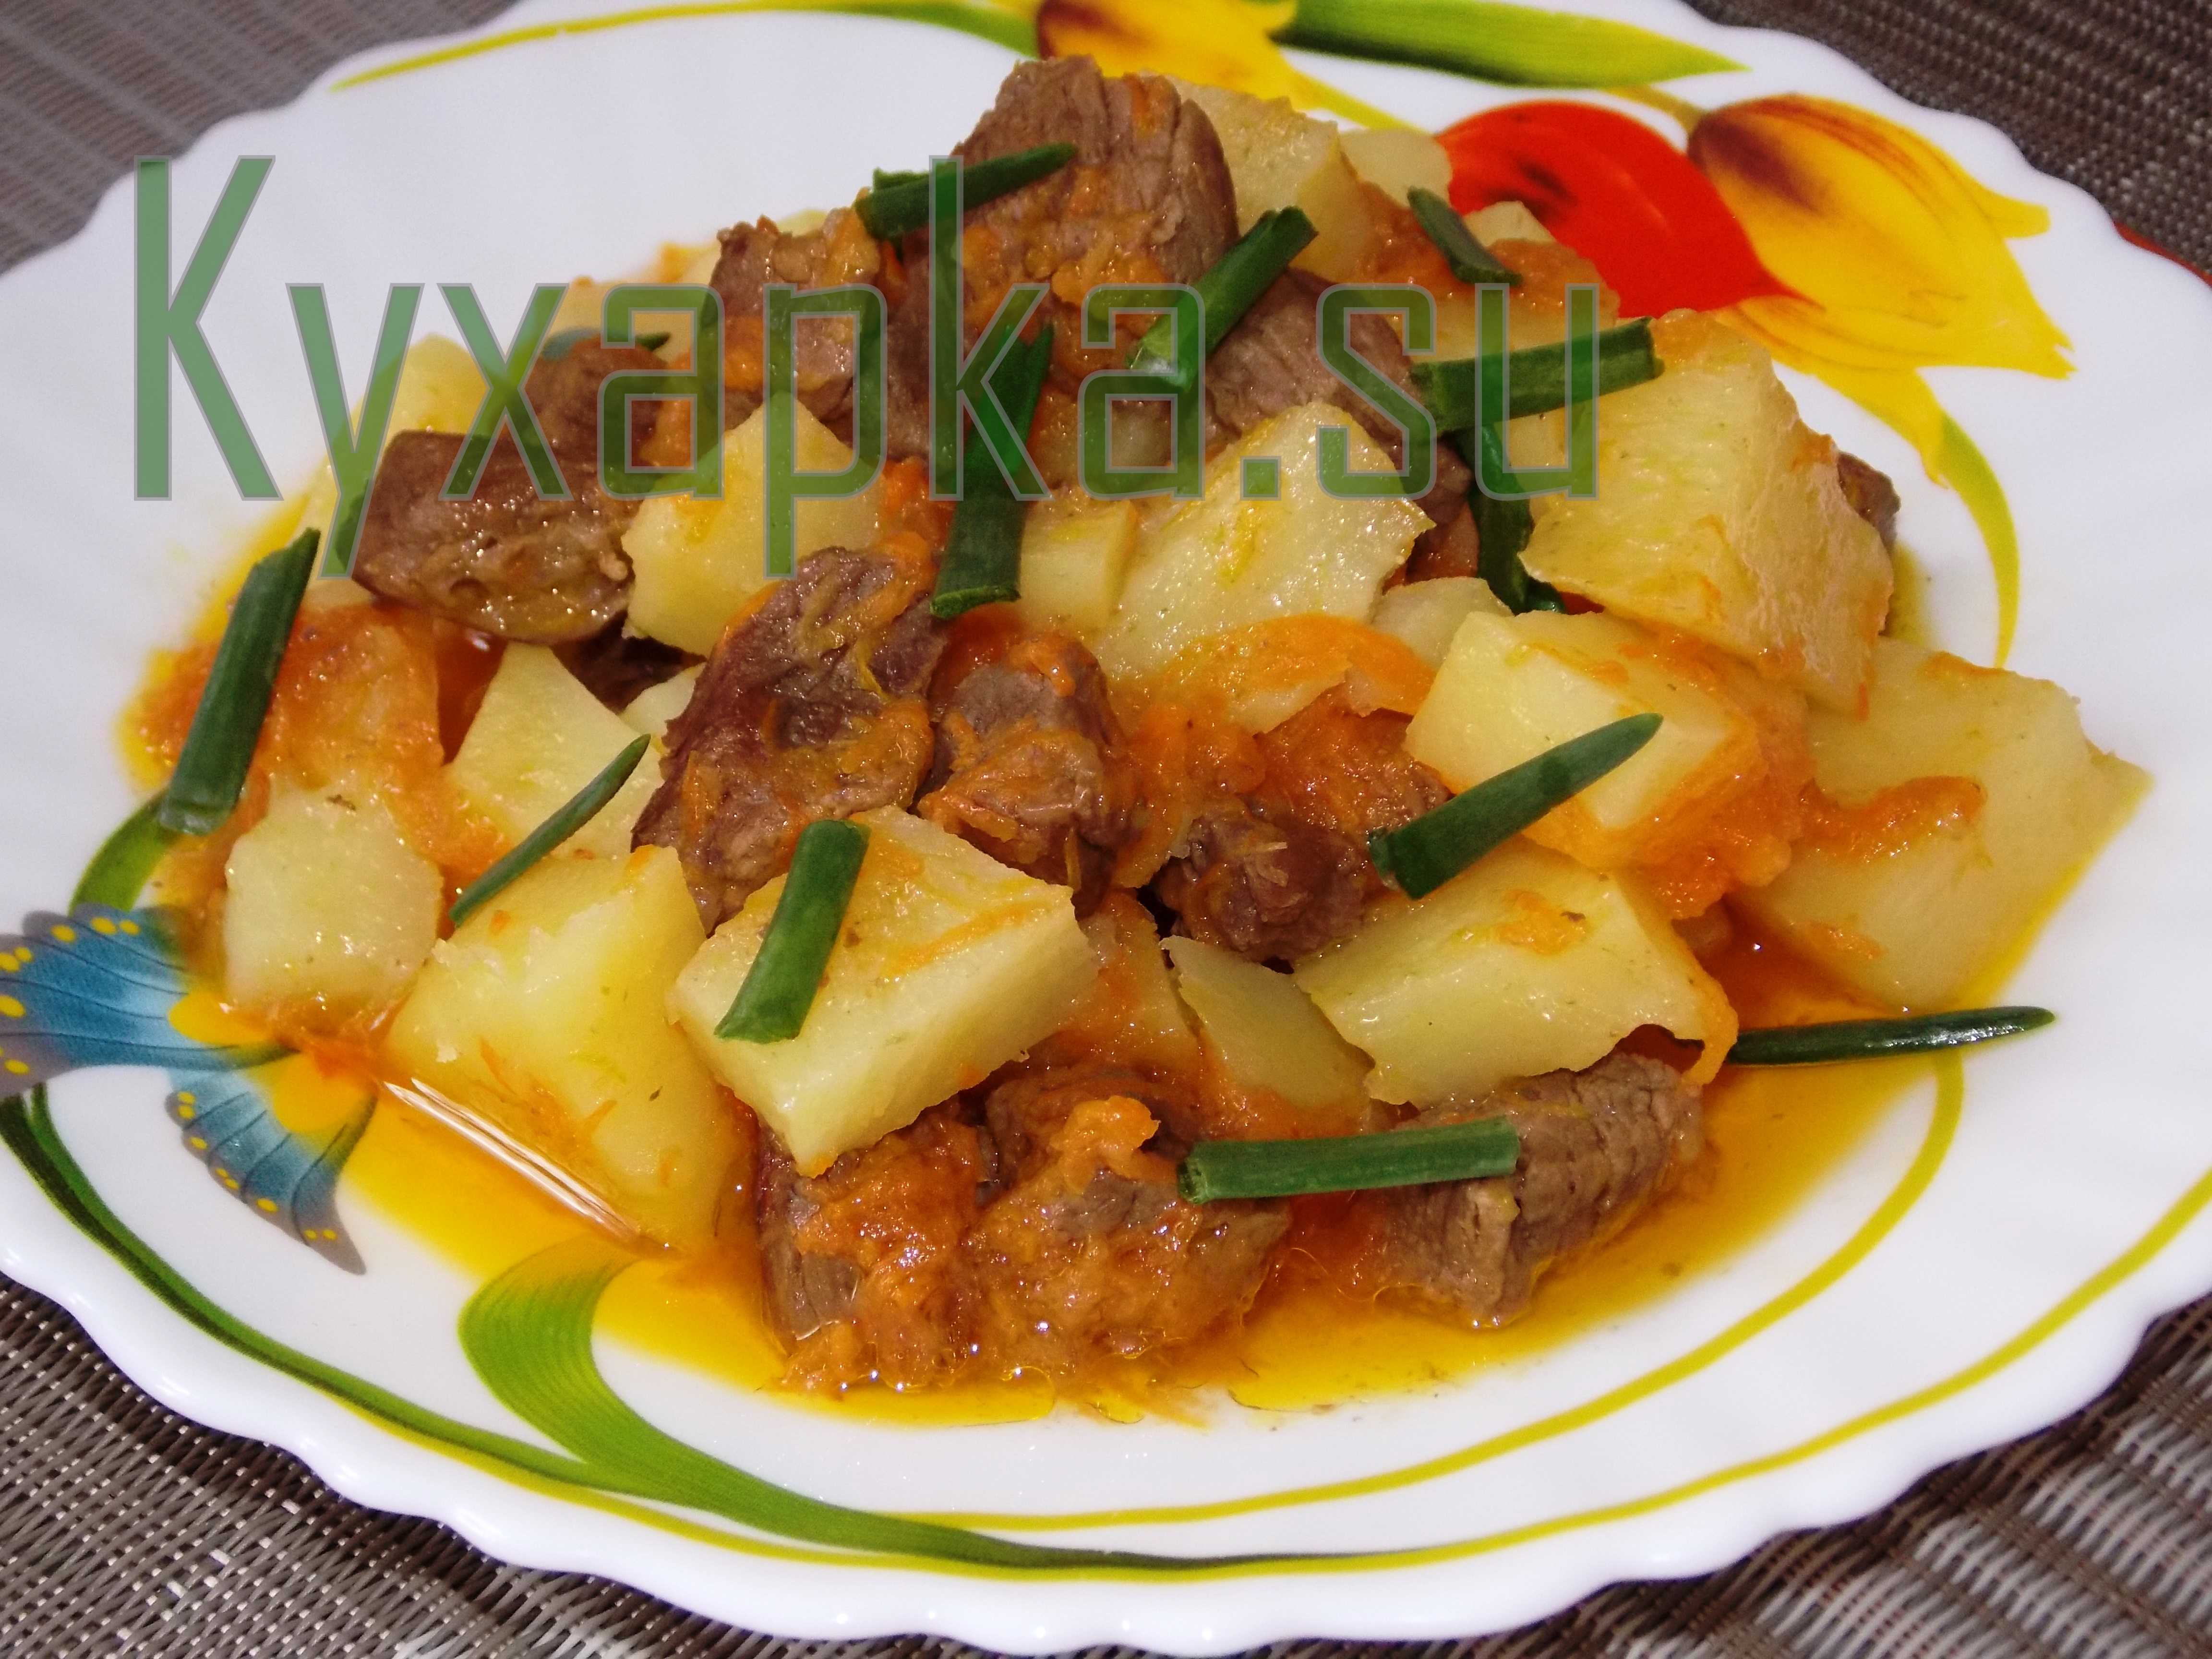 Тушеный картофель с мясом фото Kyxapka.su 